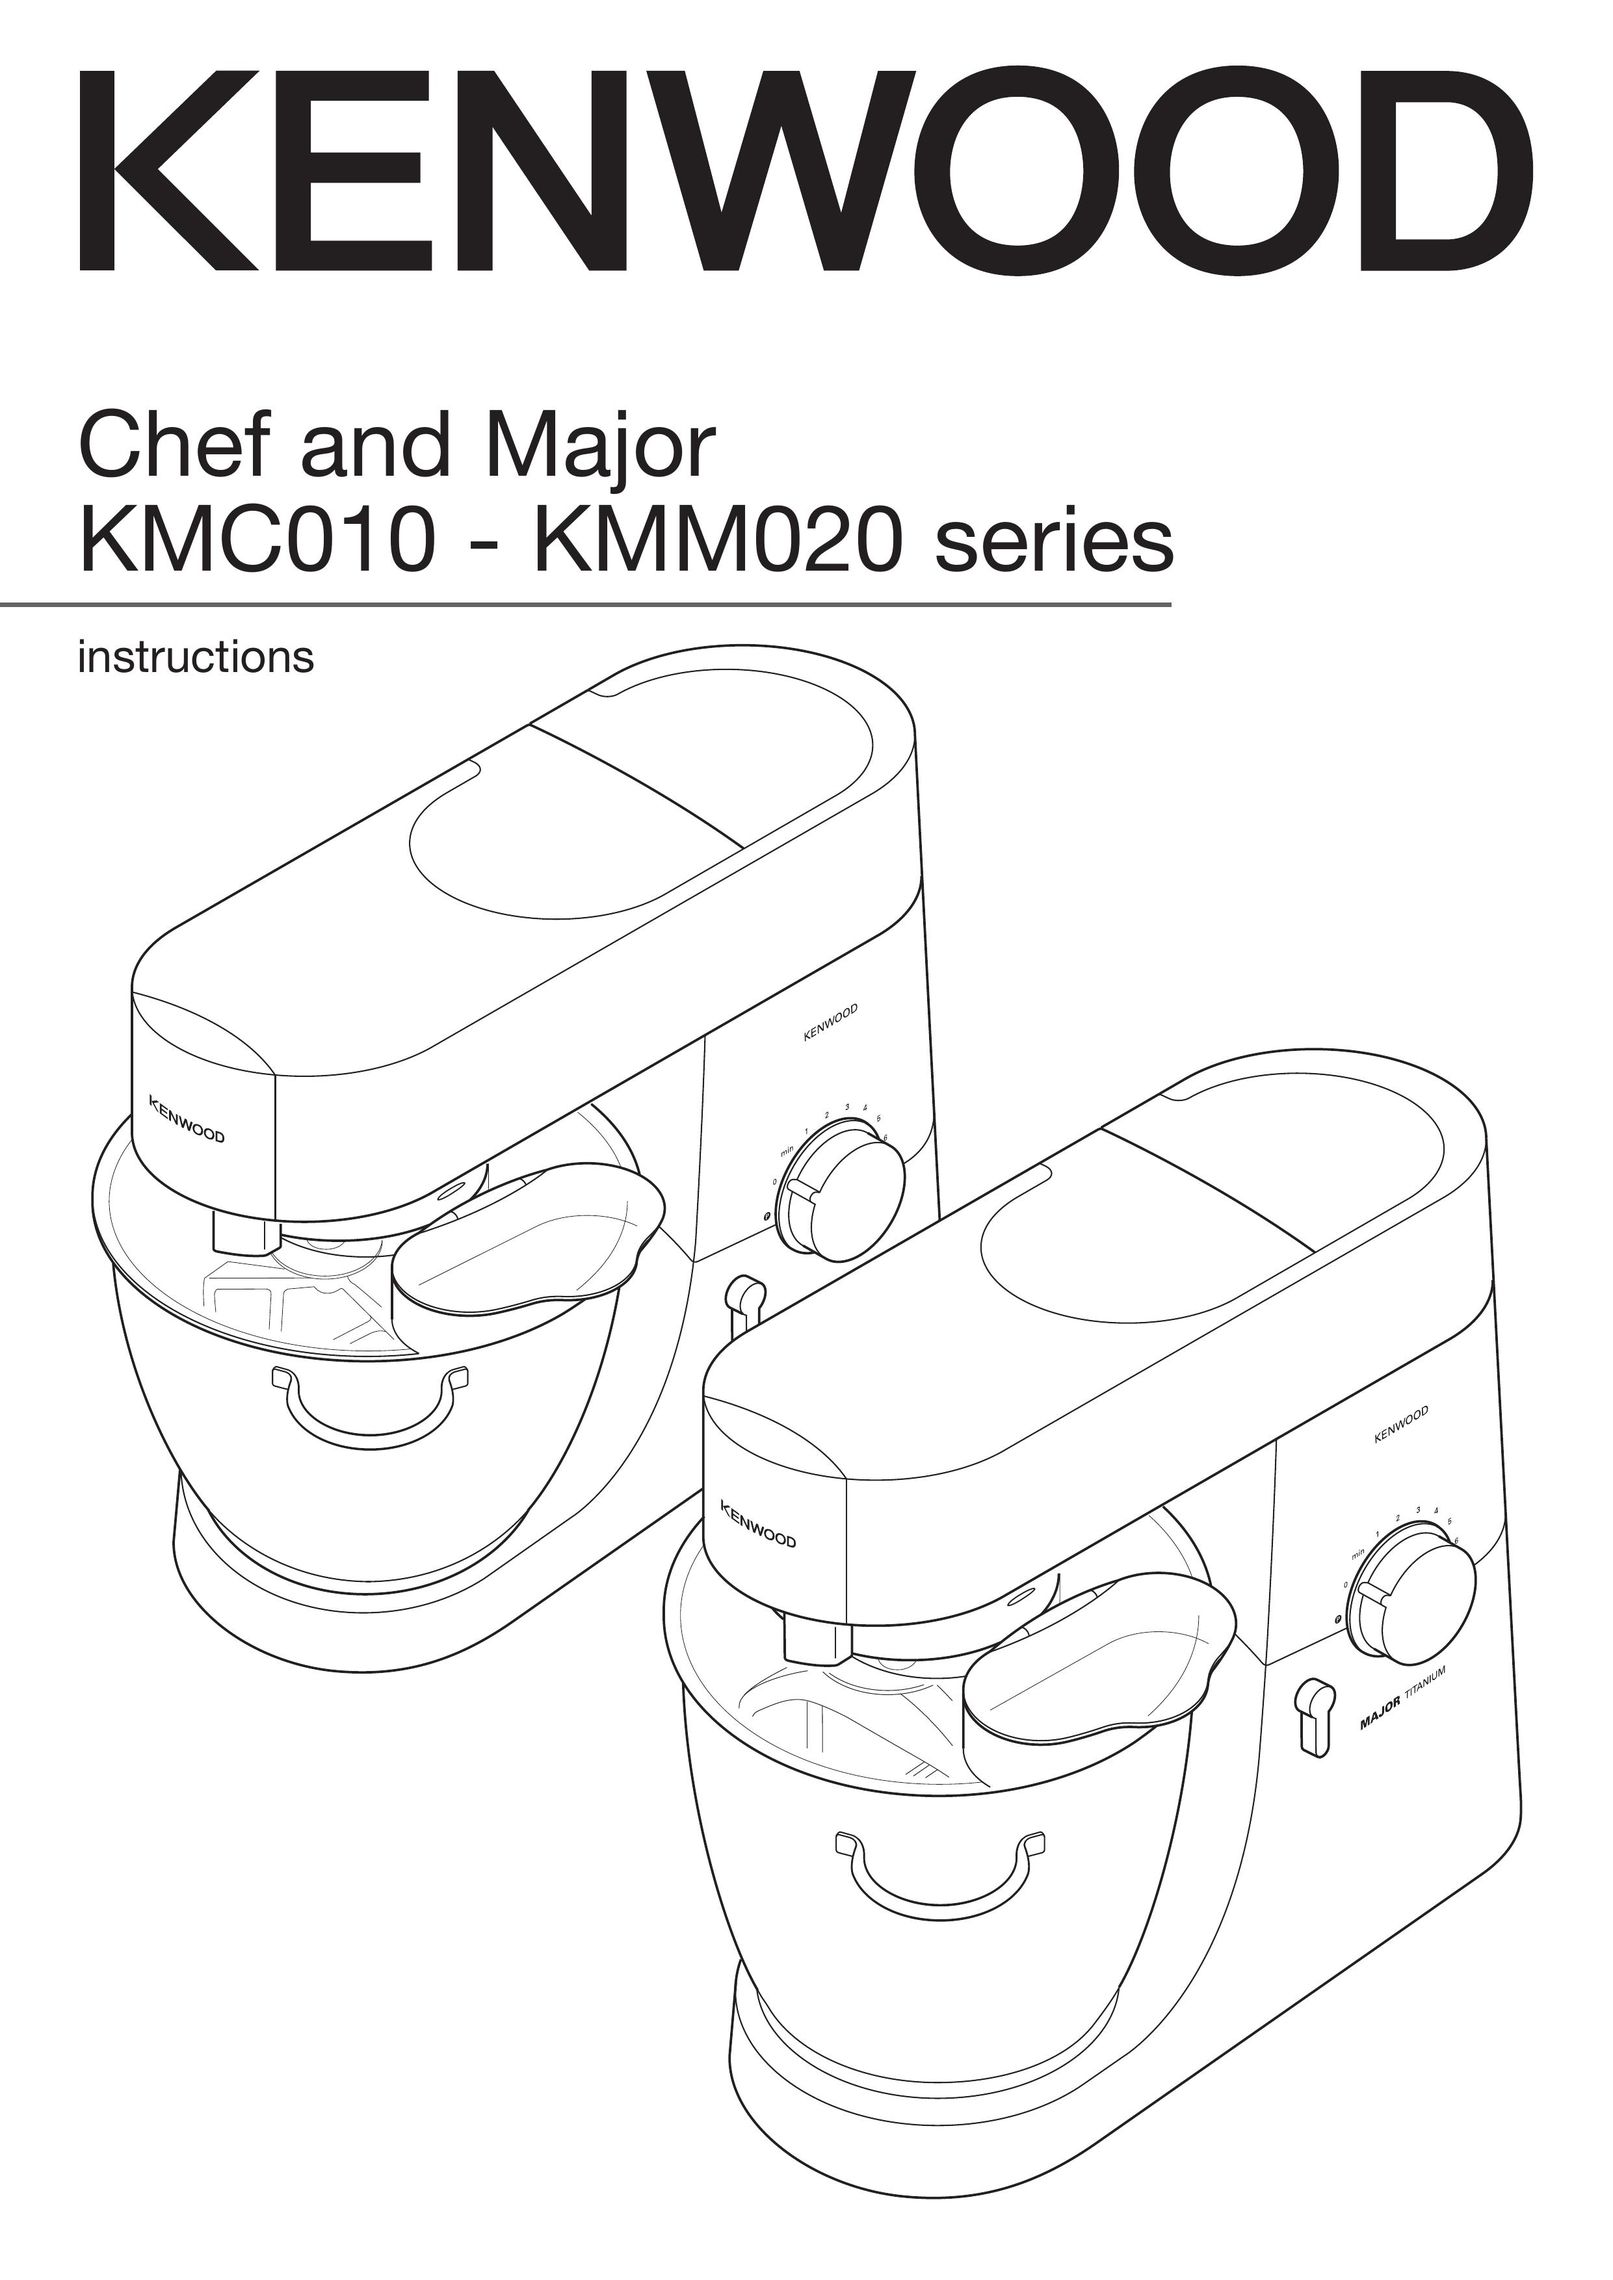 Kenwood KMC010 Mixer User Manual